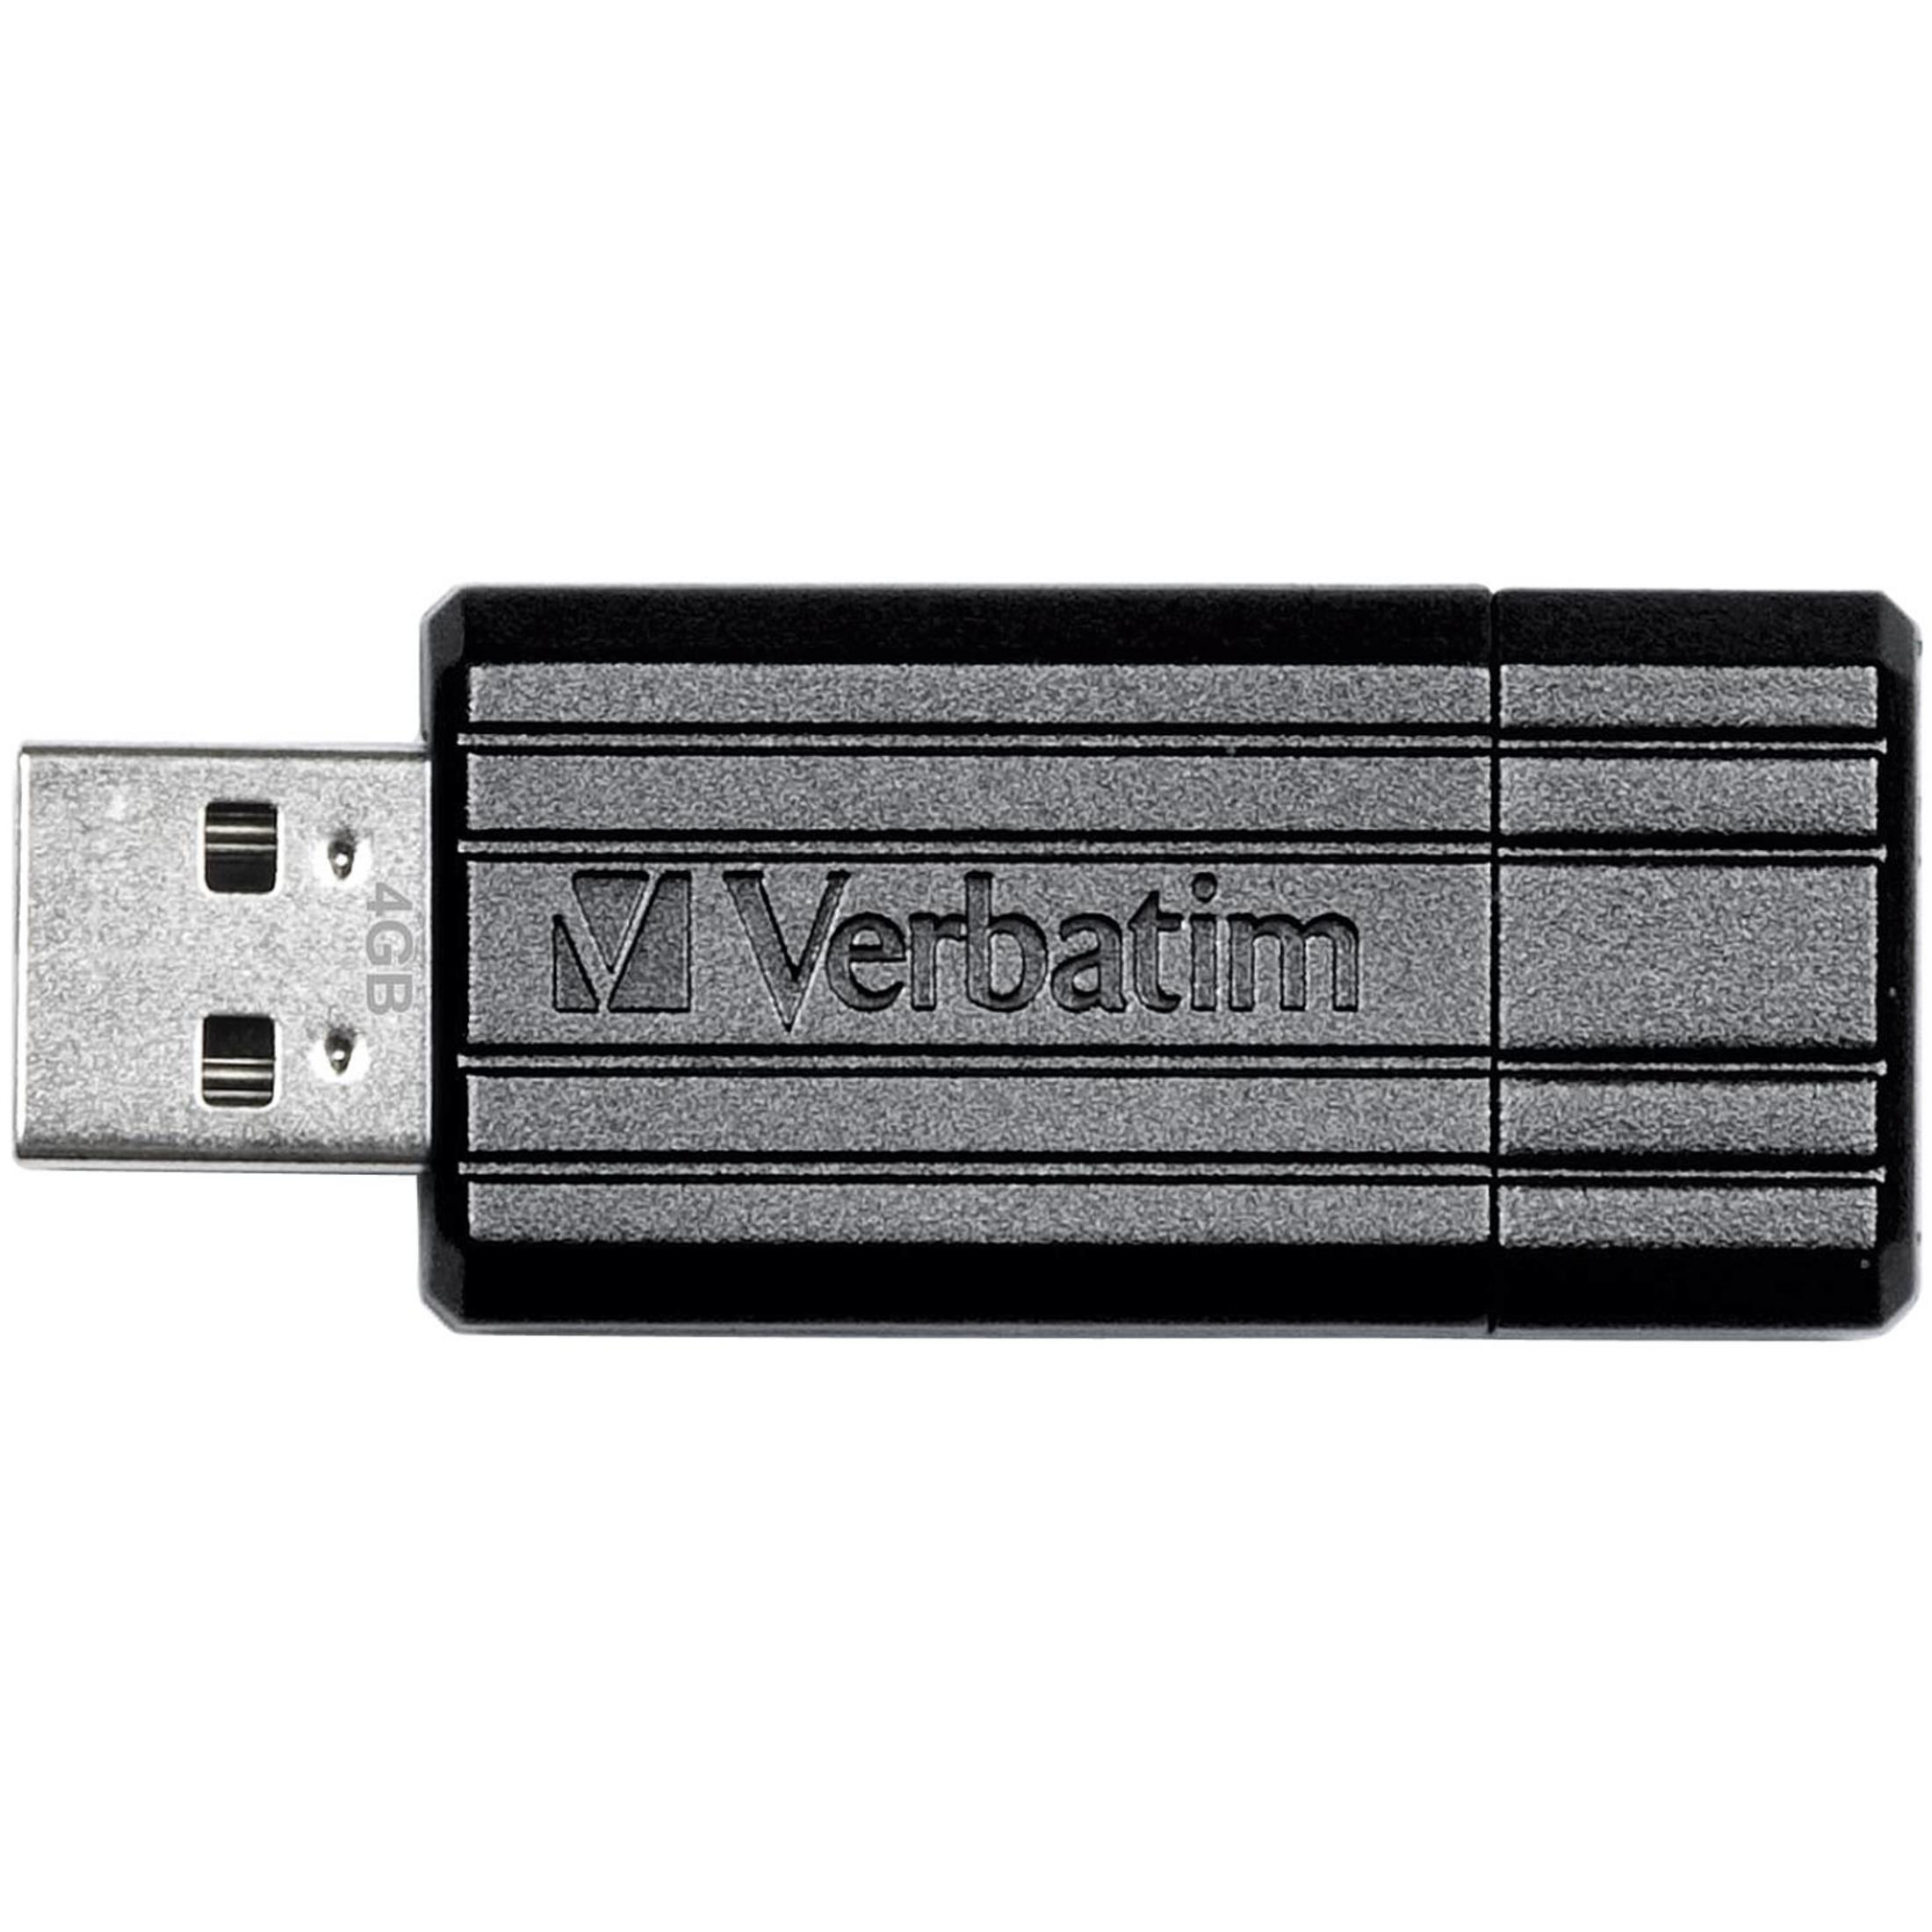 USB-Stick (Schwarz, 49062 8GB DRIVE STRIPE PIN 2.0 GB) USB VERBATIM 8